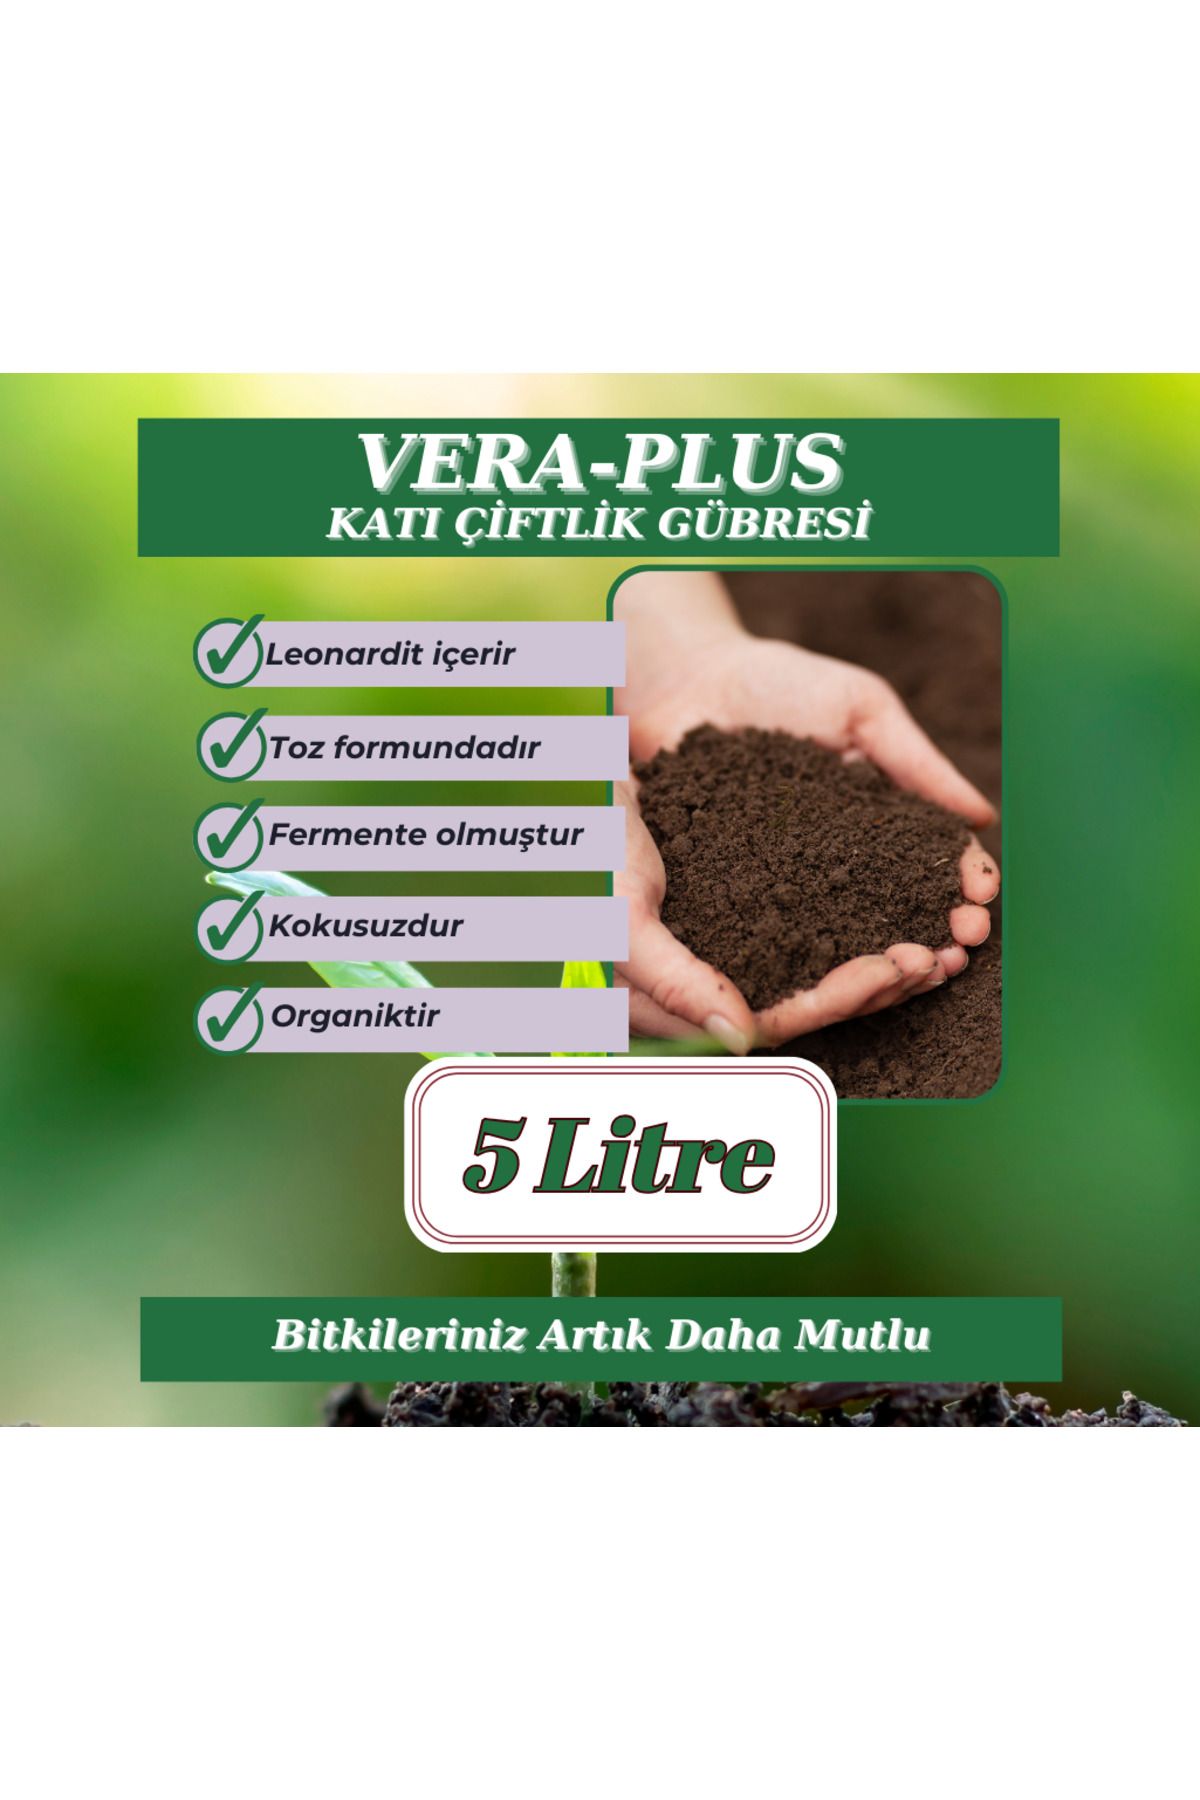 MF Botanik Vera-plus Organik Katı Çiftlik Gübresi - 5 Litre